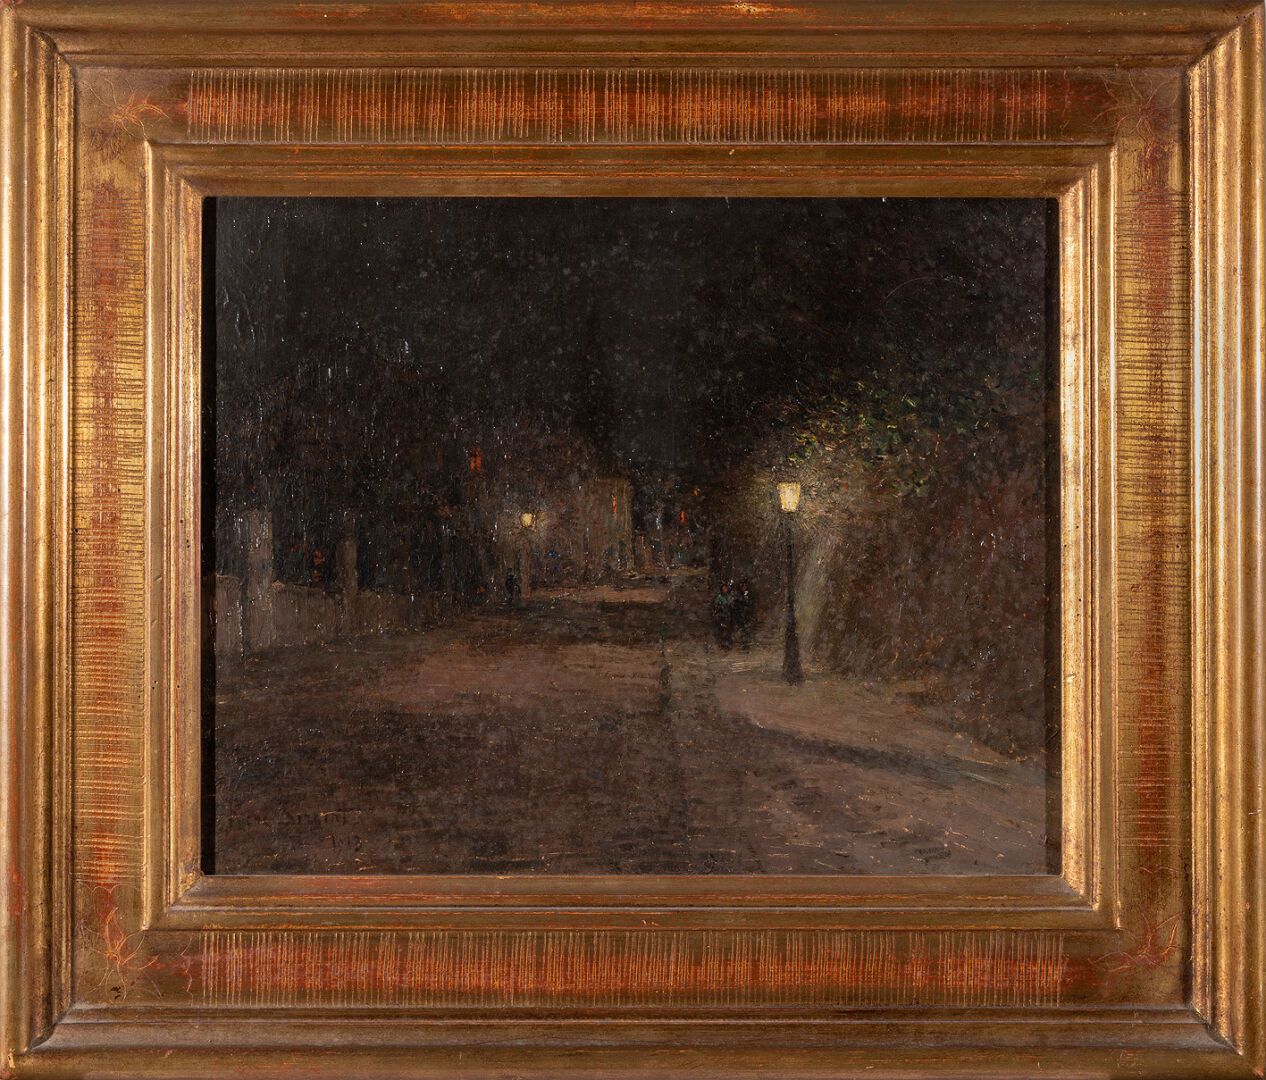 Null 勒内-谢尔盖 (1865-1927)

蒙马特的阿布鲁瓦街的景色。夜间的影响

布面油画，左下角有签名，日期为1913年，背面有会签、位置和日期

4&hellip;